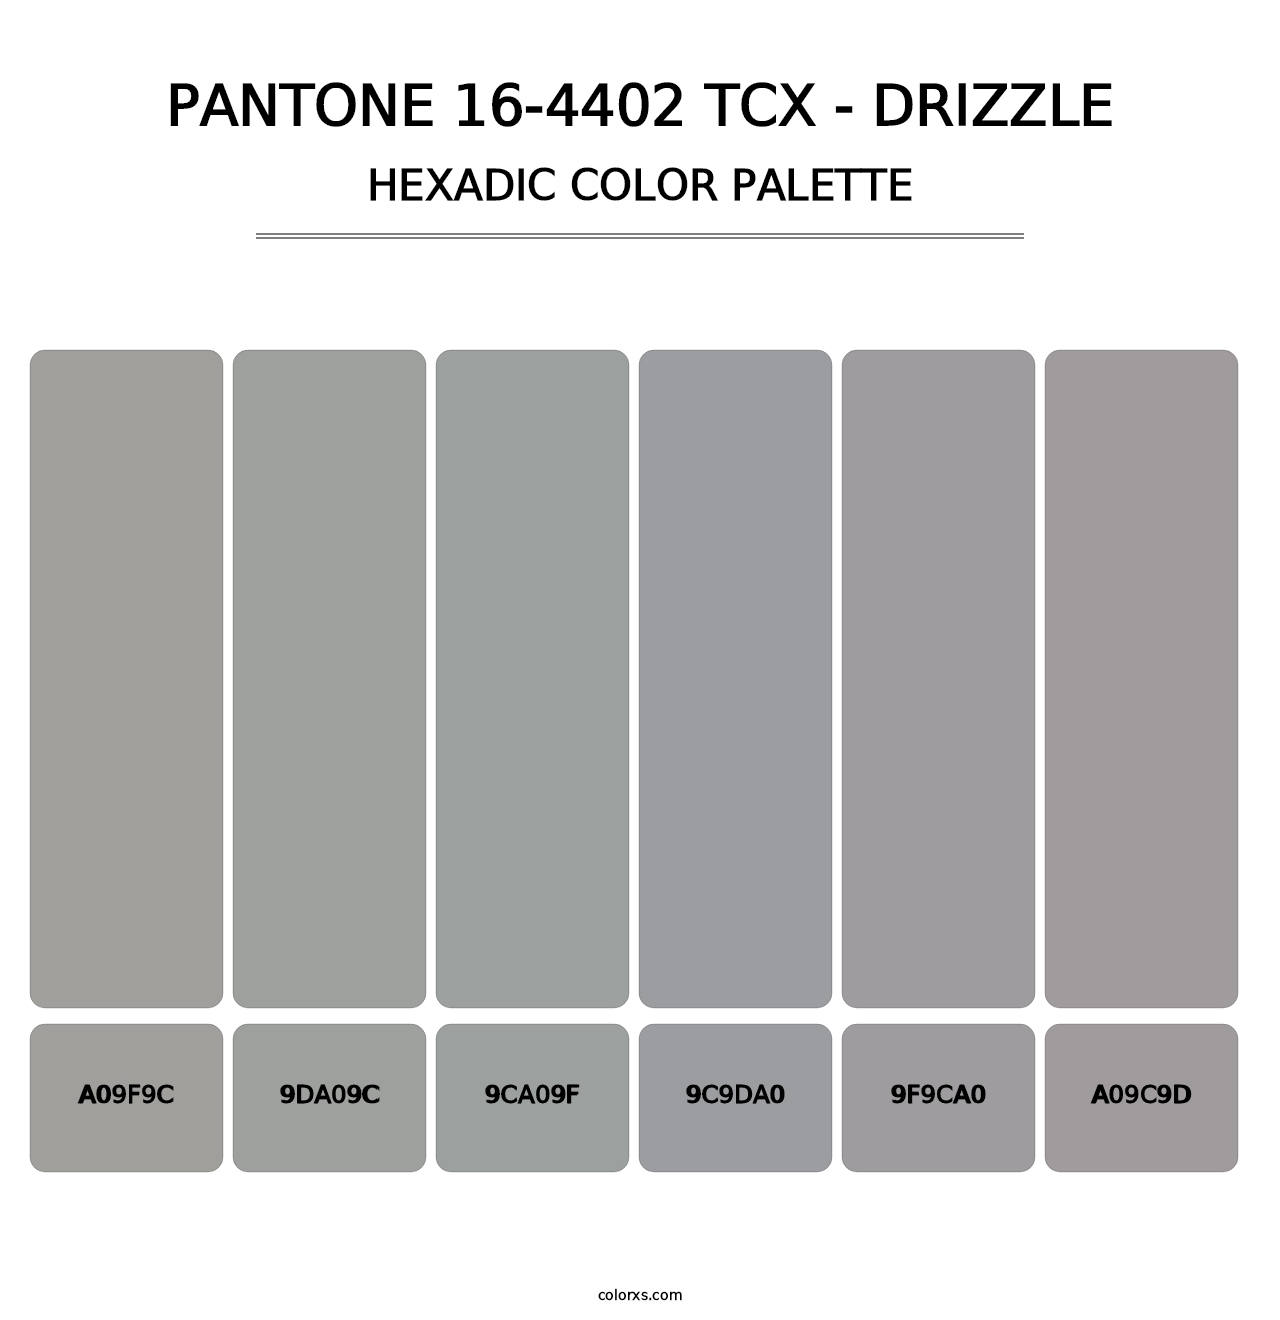 PANTONE 16-4402 TCX - Drizzle - Hexadic Color Palette